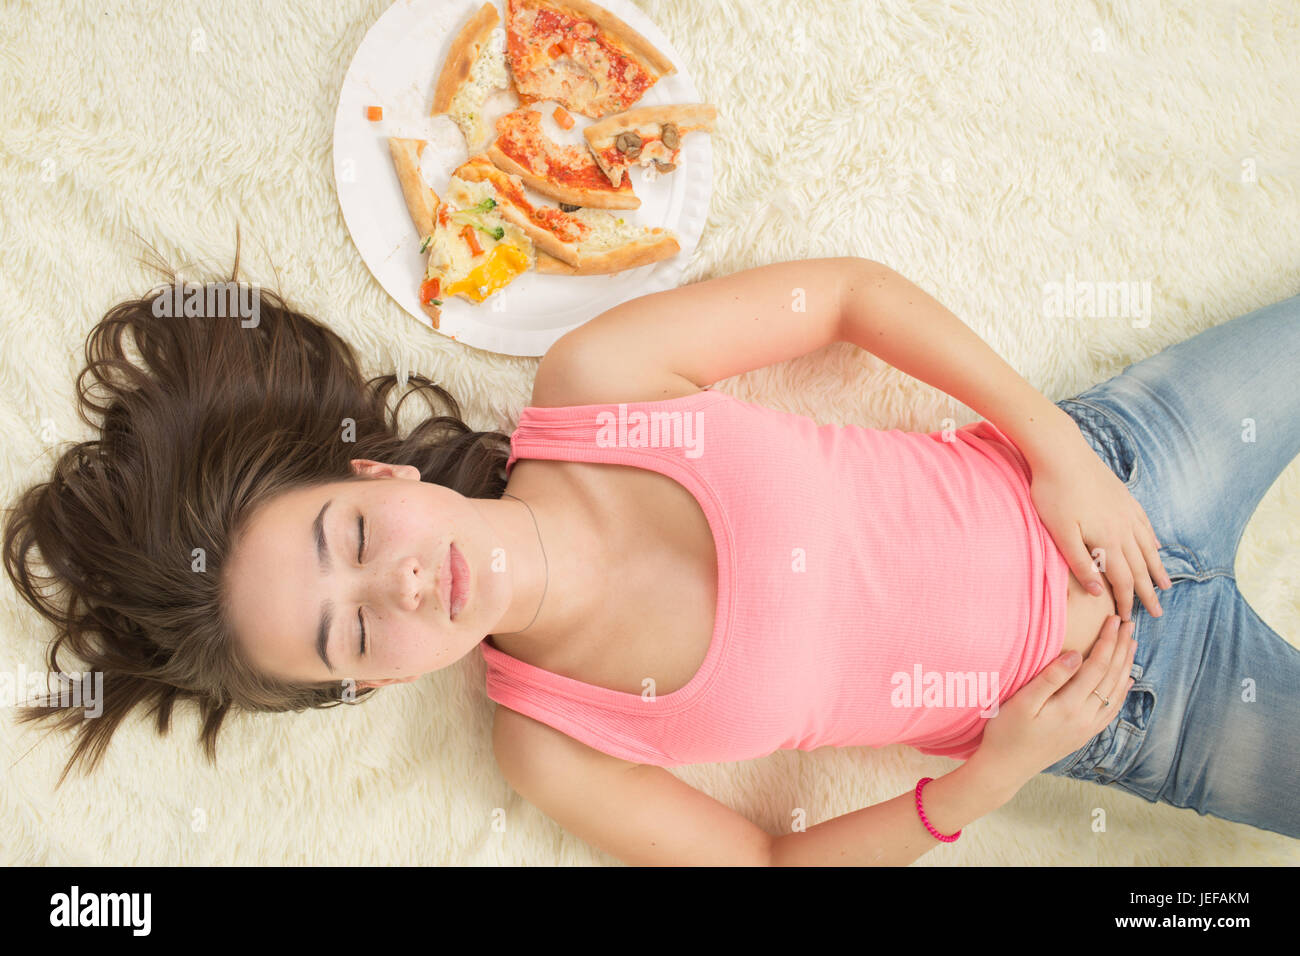 Essen Sie, unglückliche Frau mit Stücken von Pizza auf weißem Hintergrund Stockfoto